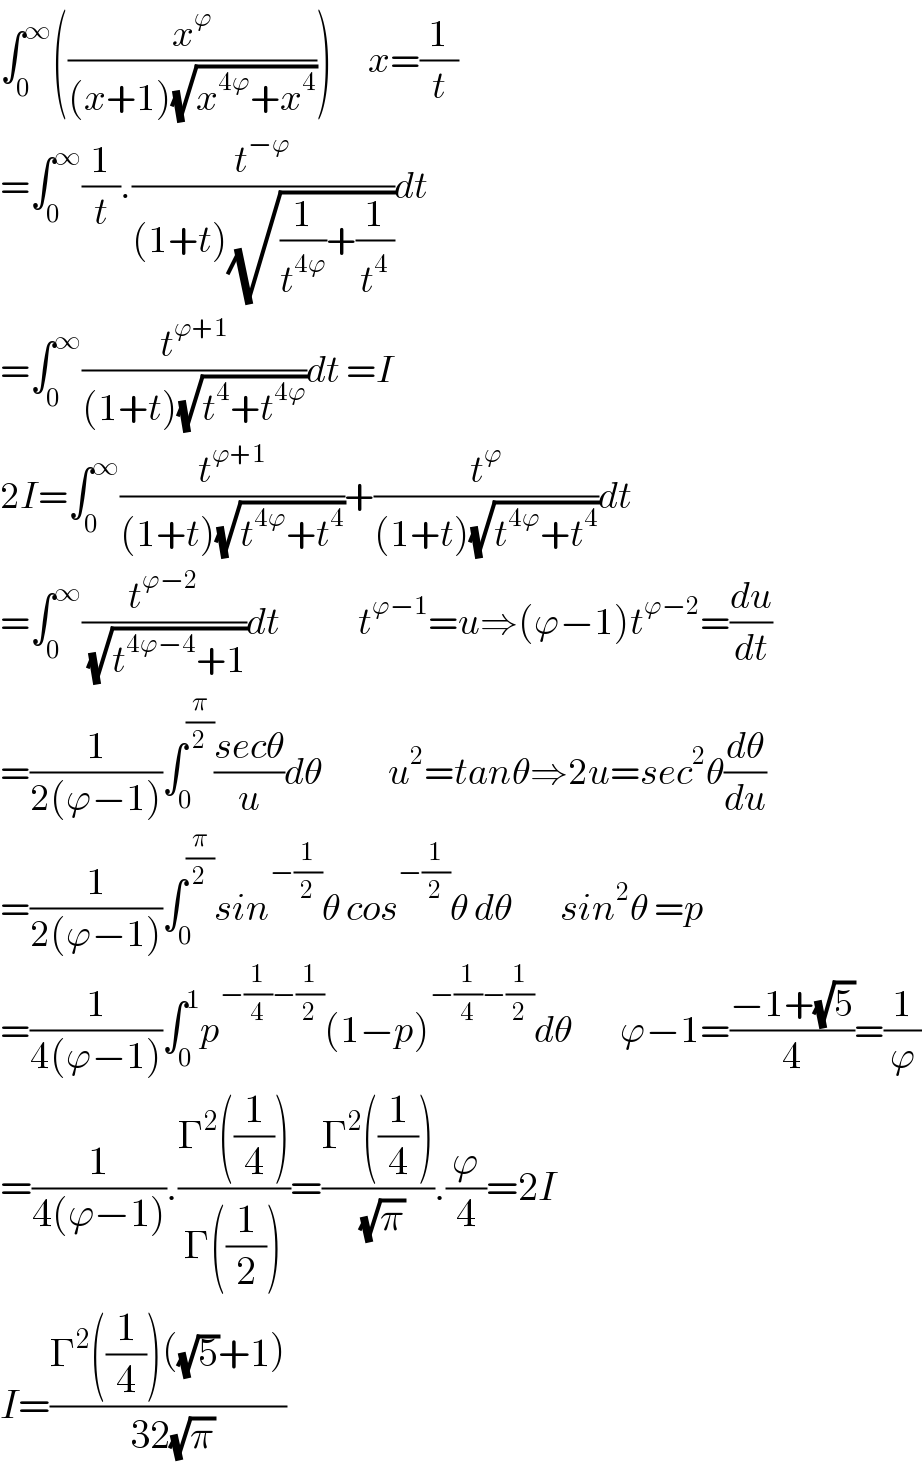 ∫_0 ^∞ ((x^ϕ /((x+1)(√(x^(4ϕ) +x^4 )))))      x=(1/t)  =∫_0 ^∞ (1/t).(t^(−ϕ) /((1+t)(√((1/t^(4ϕ) )+(1/t^4 )))))dt  =∫_0 ^∞ (t^(ϕ+1) /((1+t)(√(t^4 +t^(4ϕ) ))))dt =I  2I=∫_0 ^∞ (t^(ϕ+1) /((1+t)(√(t^(4ϕ) +t^4 ))))+(t^ϕ /((1+t)(√(t^(4ϕ) +t^4 ))))dt  =∫_0 ^∞ (t^(ϕ−2) /( (√(t^(4ϕ−4) +1))))dt             t^(ϕ−1) =u⇒(ϕ−1)t^(ϕ−2) =(du/dt)  =(1/(2(ϕ−1)))∫_0 ^(π/2) ((secθ)/u)dθ           u^2 =tanθ⇒2u=sec^2 θ(dθ/du)  =(1/(2(ϕ−1)))∫_0 ^(π/2) sin^(−(1/2)) θ cos^(−(1/2)) θ dθ        sin^2 θ =p  =(1/(4(ϕ−1)))∫_0 ^1 p^(−(1/4)−(1/2)) (1−p)^(−(1/4)−(1/2)) dθ        ϕ−1=((−1+(√5))/4)=(1/ϕ)  =(1/(4(ϕ−1))).((Γ^2 ((1/4)))/(Γ((1/2))))=((Γ^2 ((1/4)))/( (√π))).(ϕ/4)=2I  I=((Γ^2 ((1/4))((√5)+1))/( 32(√π)))  